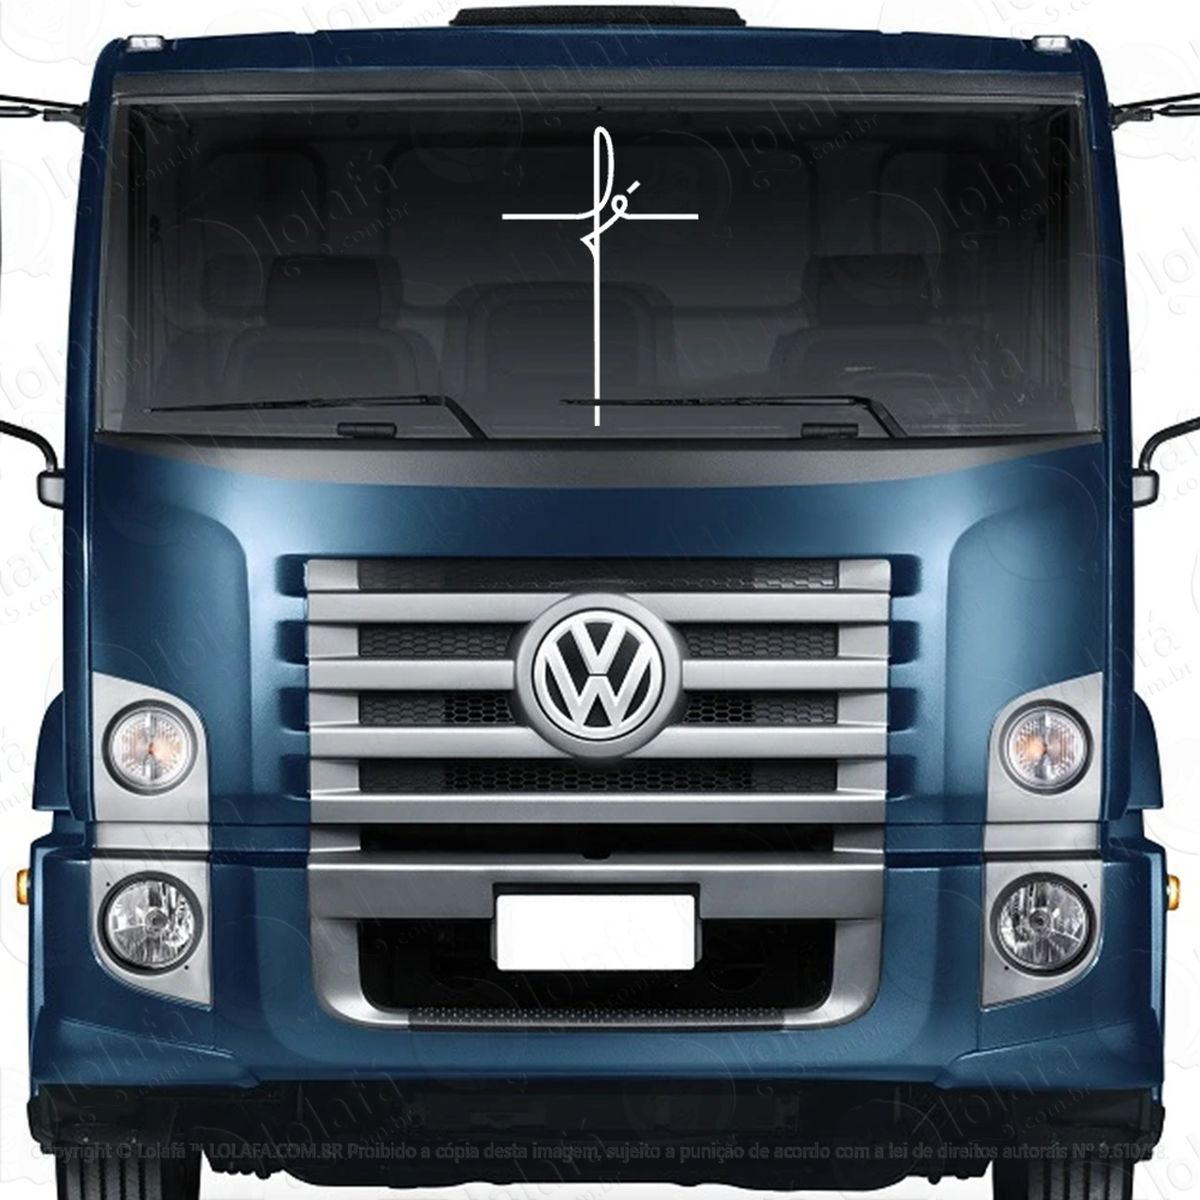 Adesivos Caminhões Veículos Constellation Container